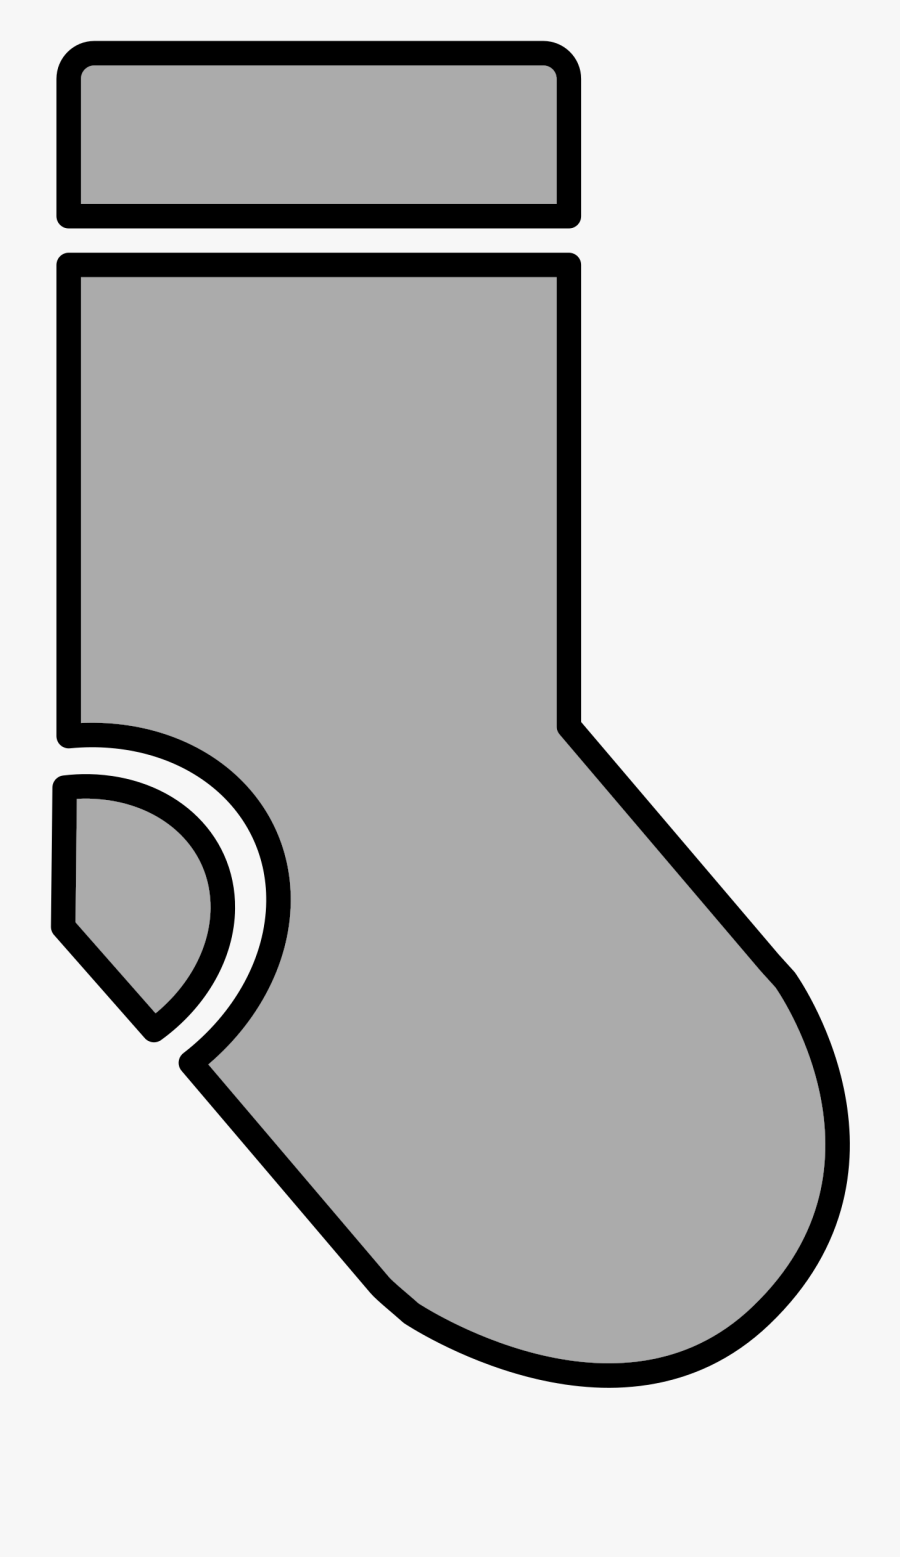 Clipart - Socks Clip Art .png, Transparent Clipart